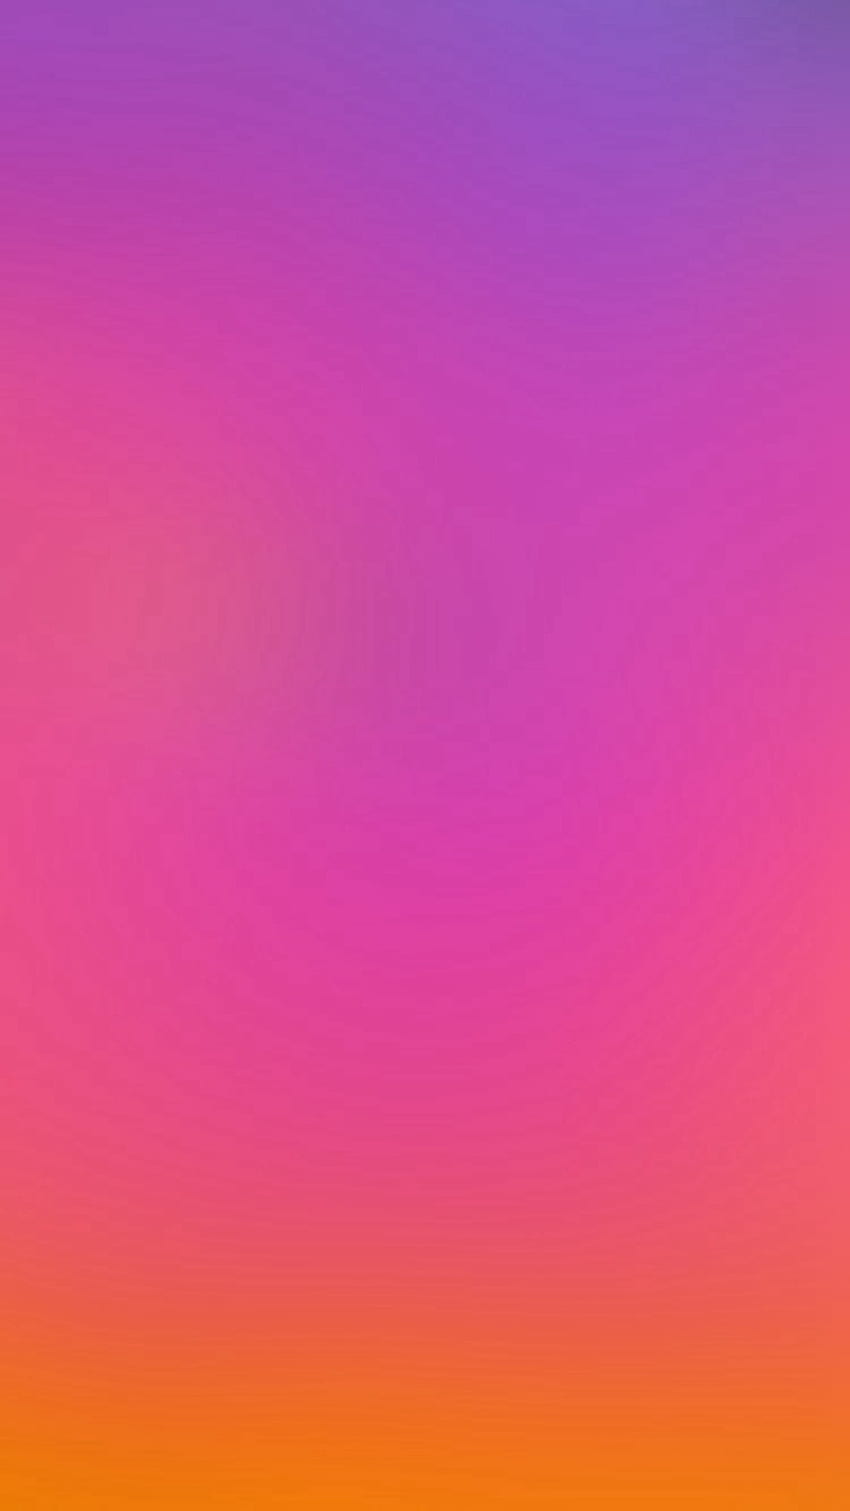 Caliente Rojo Púrpura Sun Blur Gradation iPhone 6 - Púrpura Rosa Y Naranja fondo de pantalla del teléfono